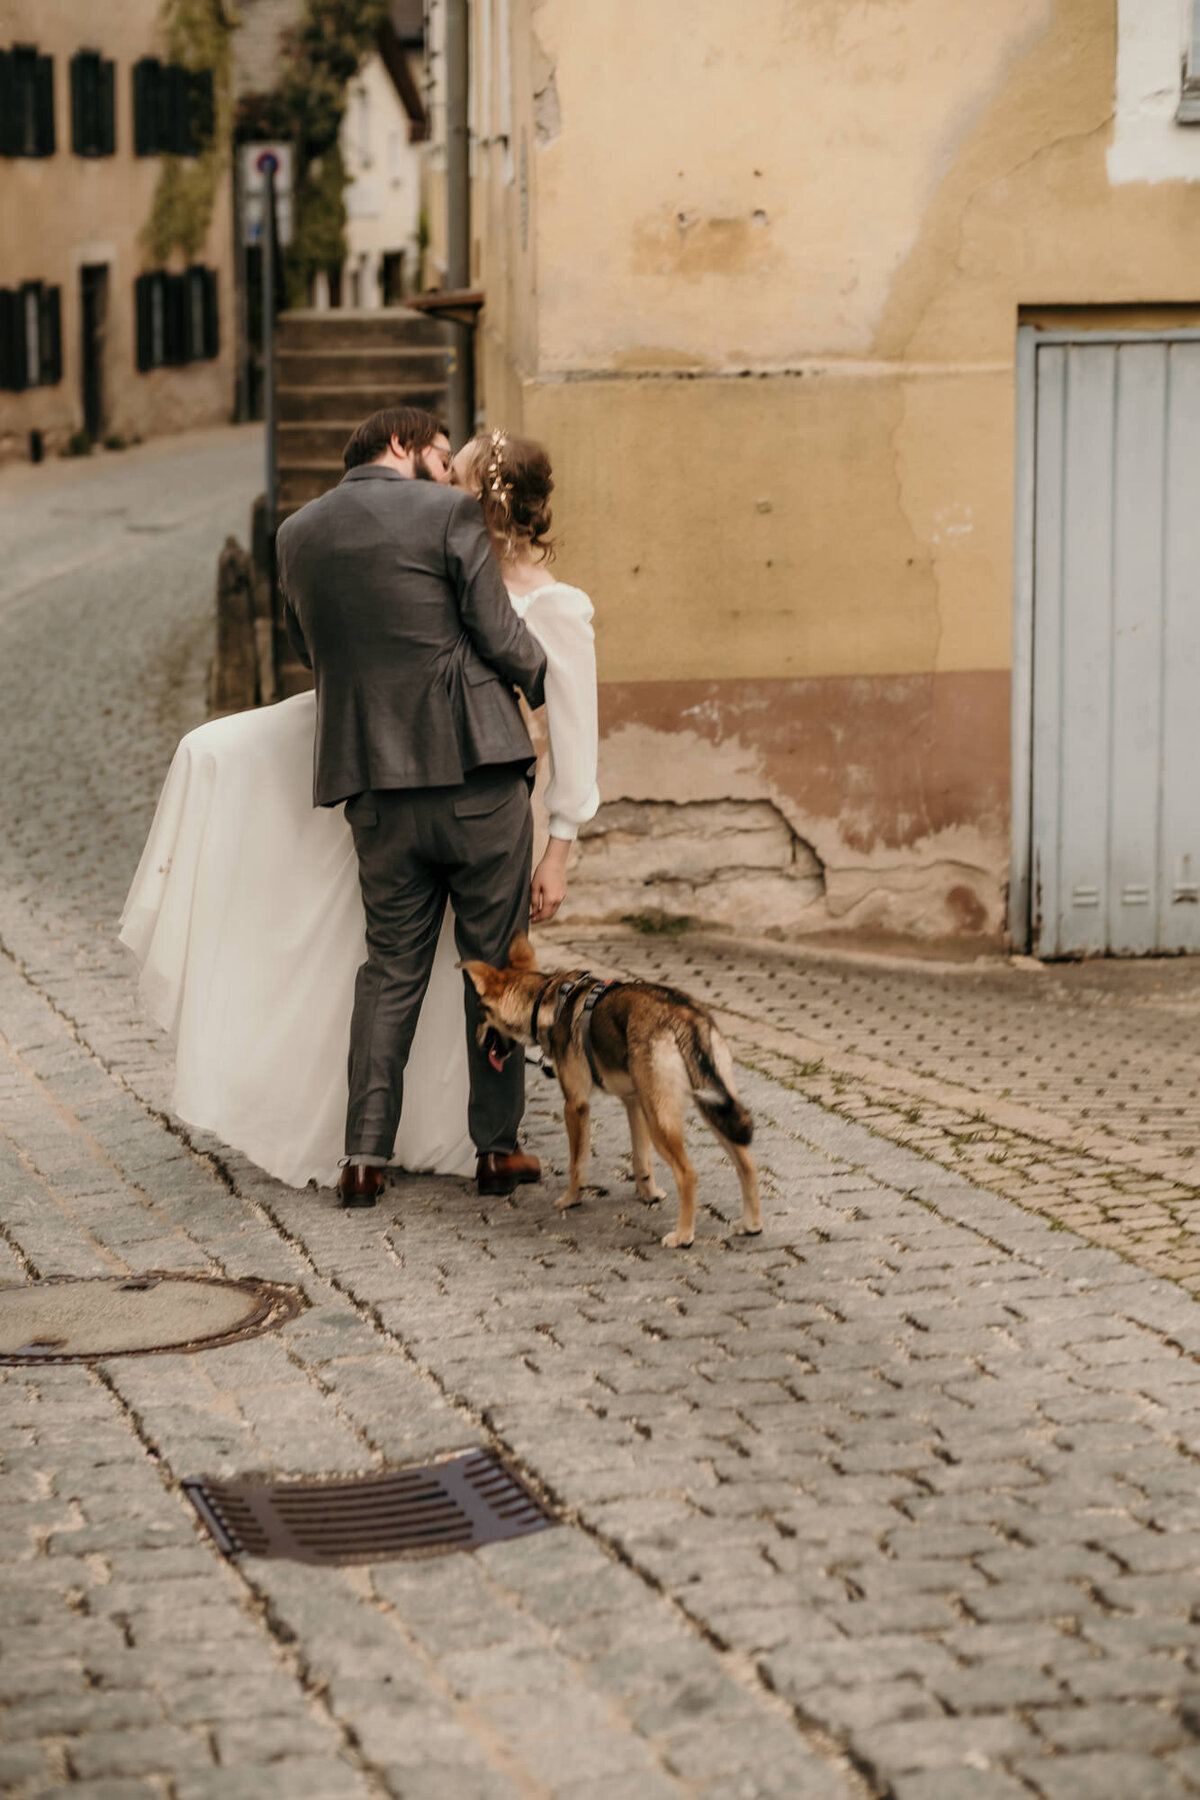 In einem innigen Kuss von hinten fotografiert steht das Hochzeitspaar neben ihrem Hund.